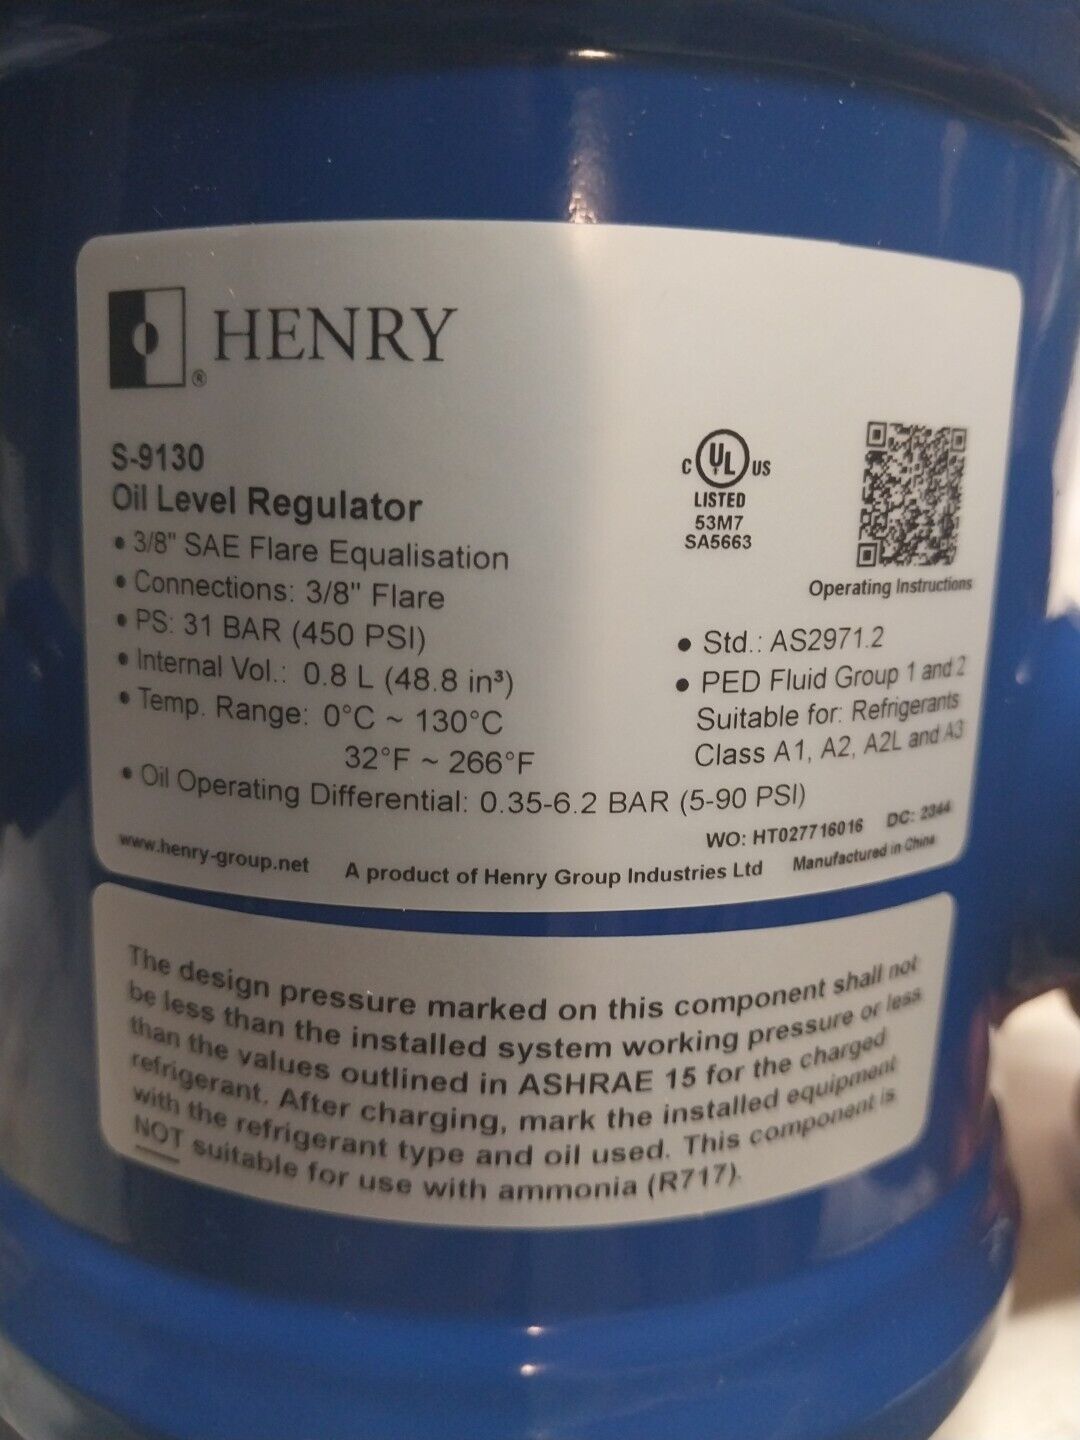 NEW HENRY S-9130, OIL LEVEL REGULATOR